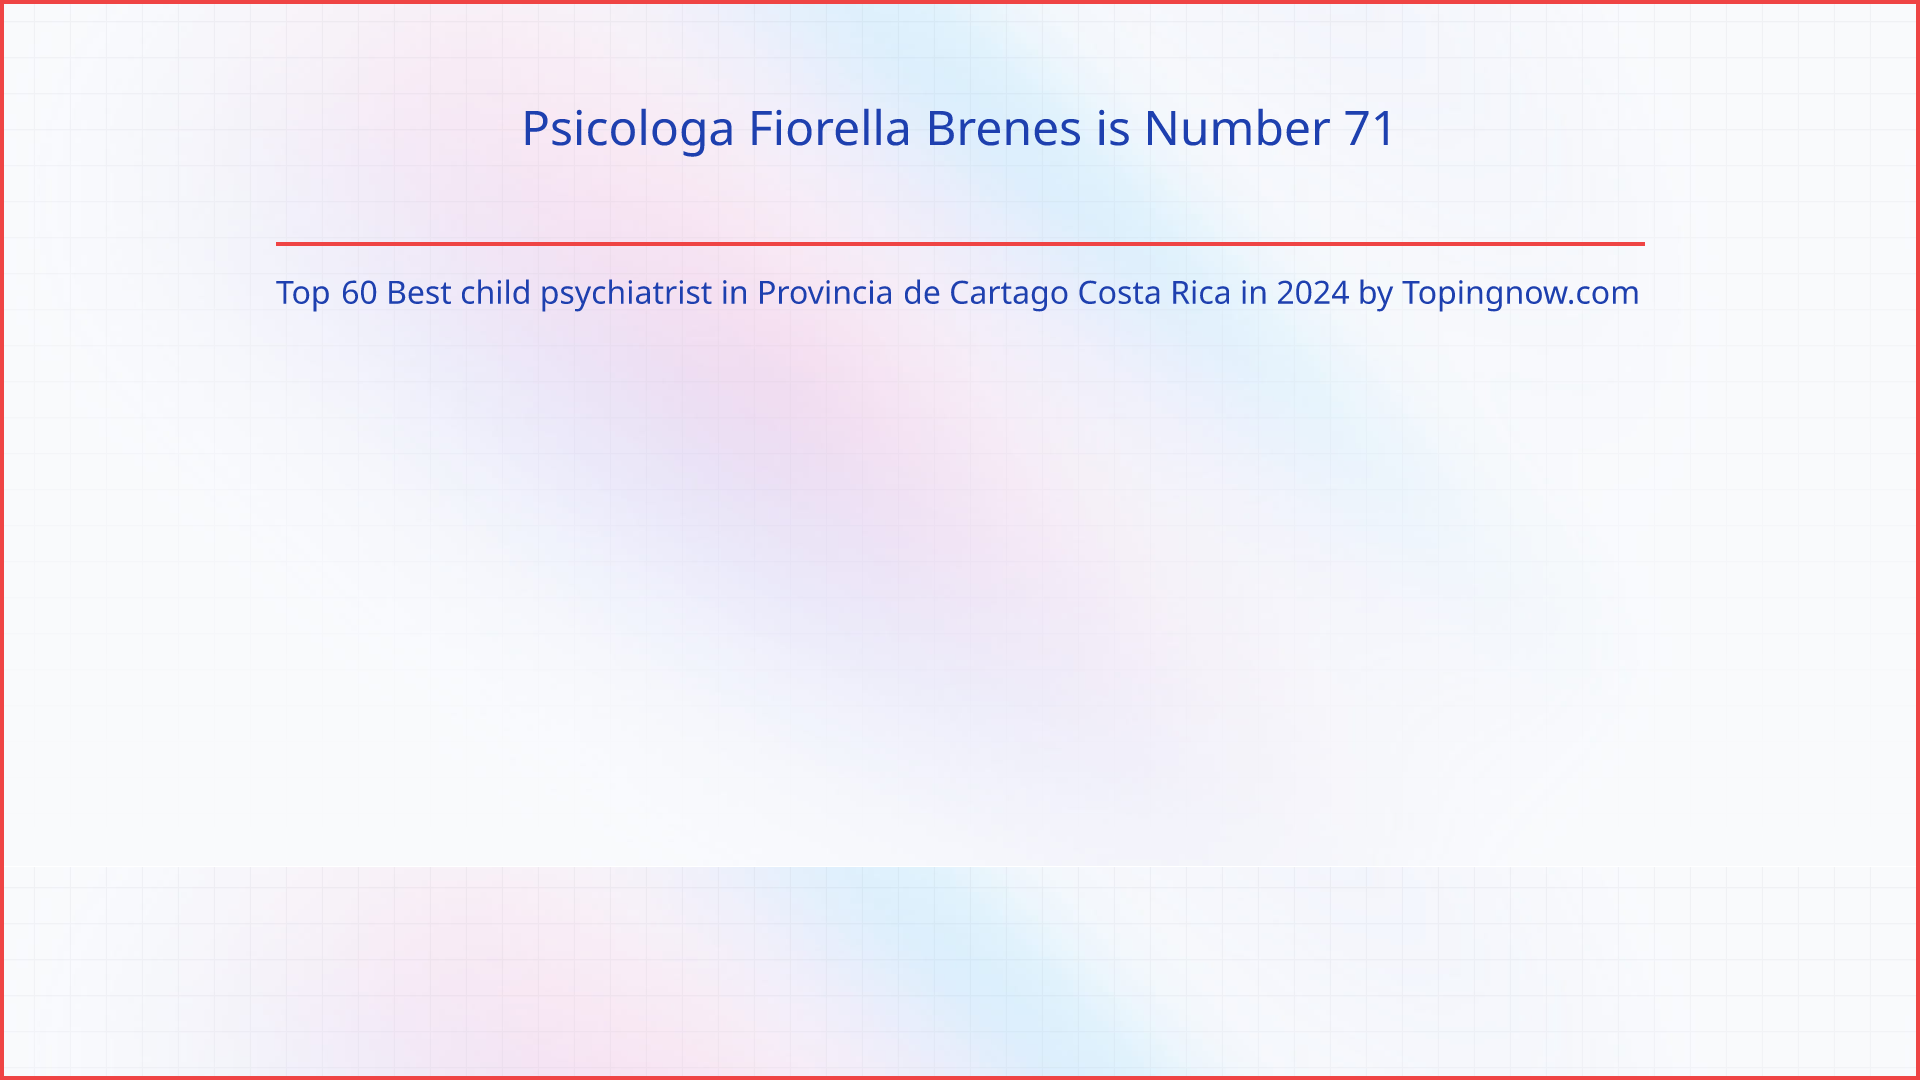 Psicologa Fiorella Brenes: Top 60 Best child psychiatrist in Provincia de Cartago Costa Rica in 2024